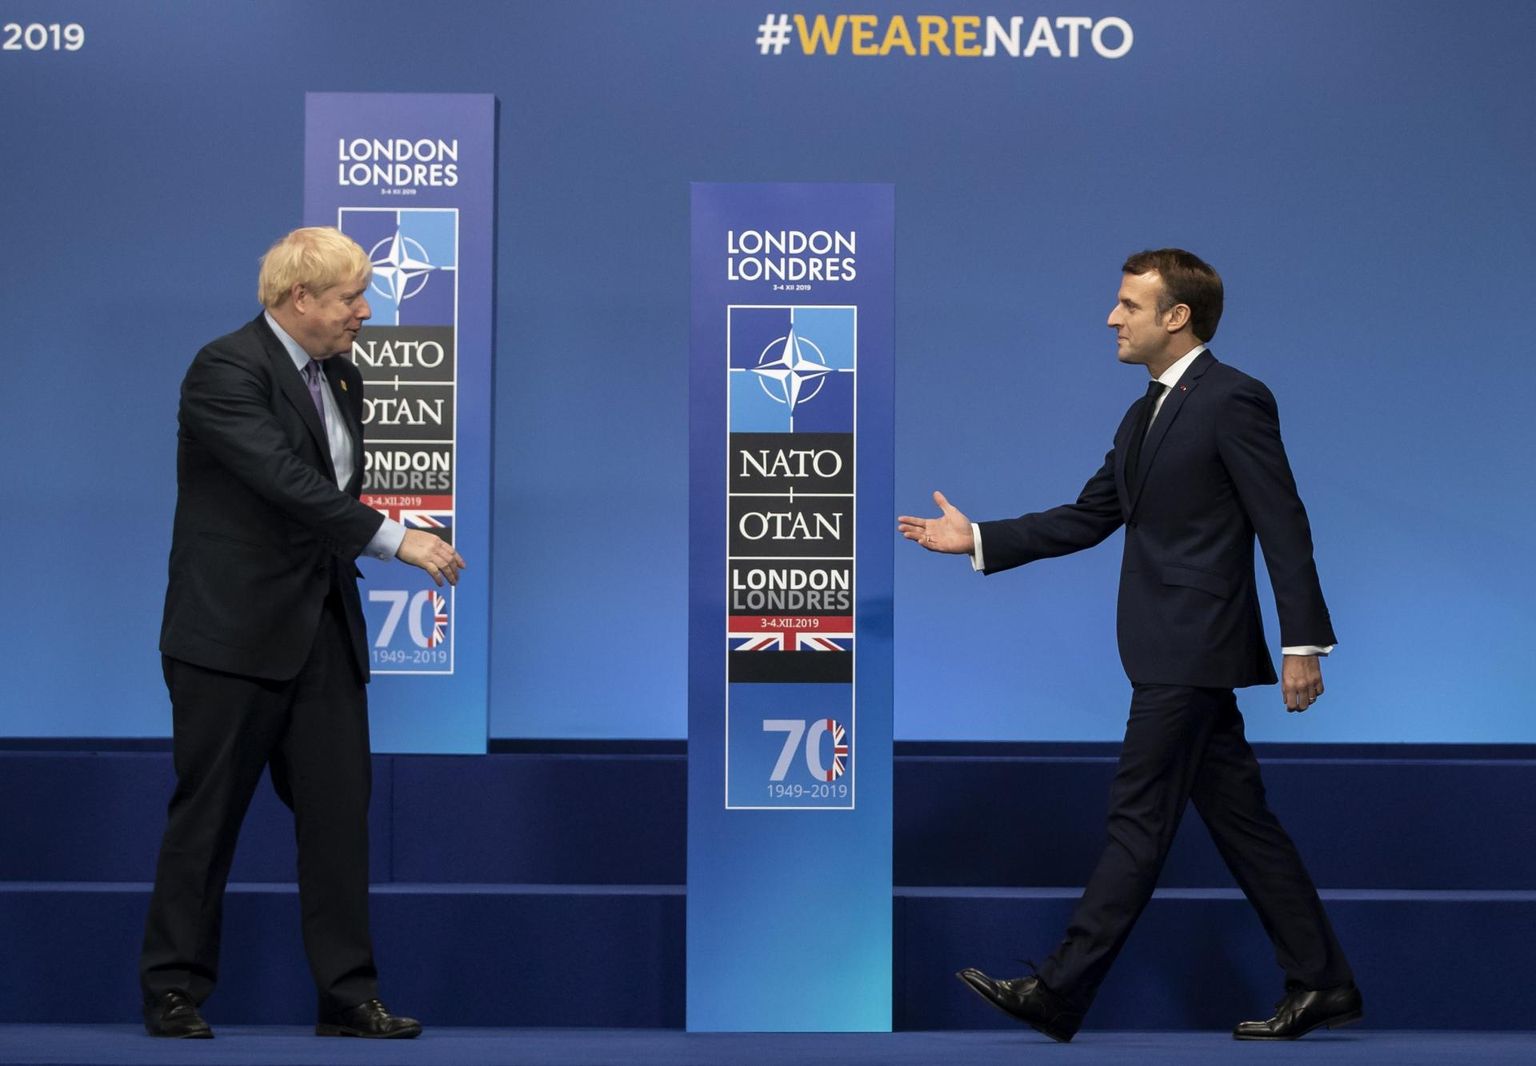 Briti peaminister Boris Johnson (vasakul) tervitamas Prantsuse presidenti Emmanuel Macroni eile NATO tippkohtumisel Londonis.